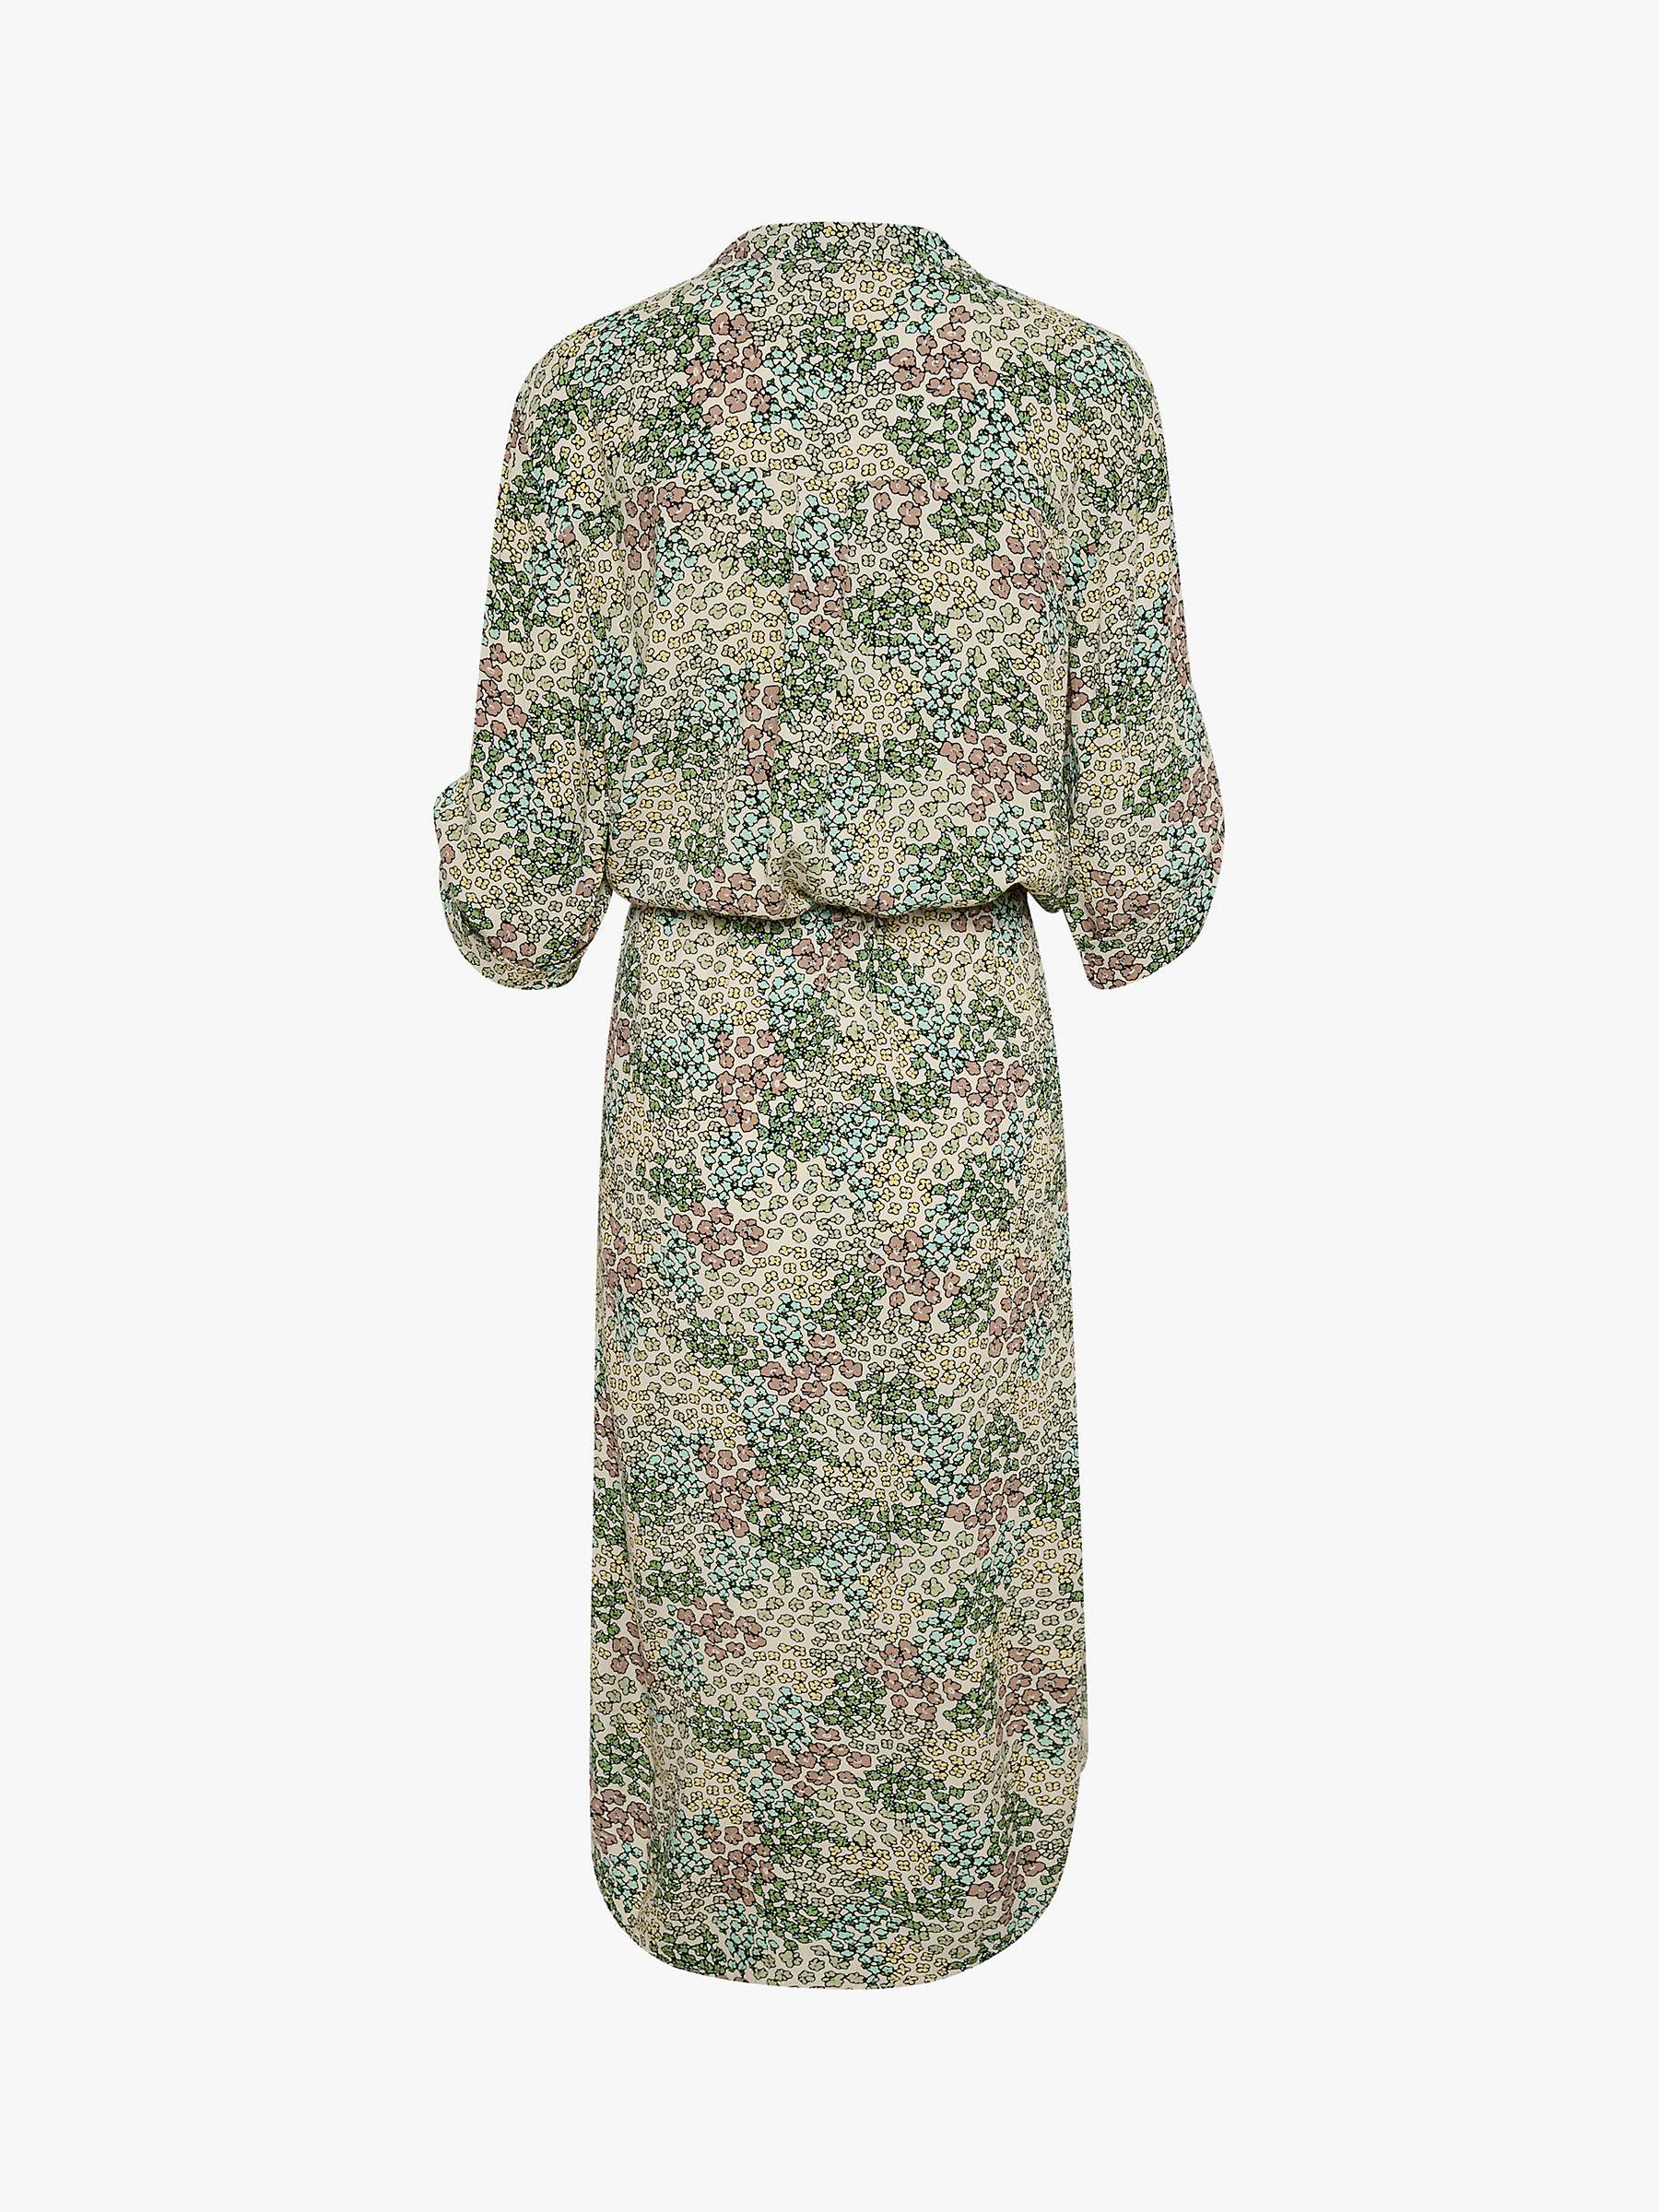 Buy Soaked In Luxury Zaya Meadow Print Dress, Green/Multi Online at johnlewis.com